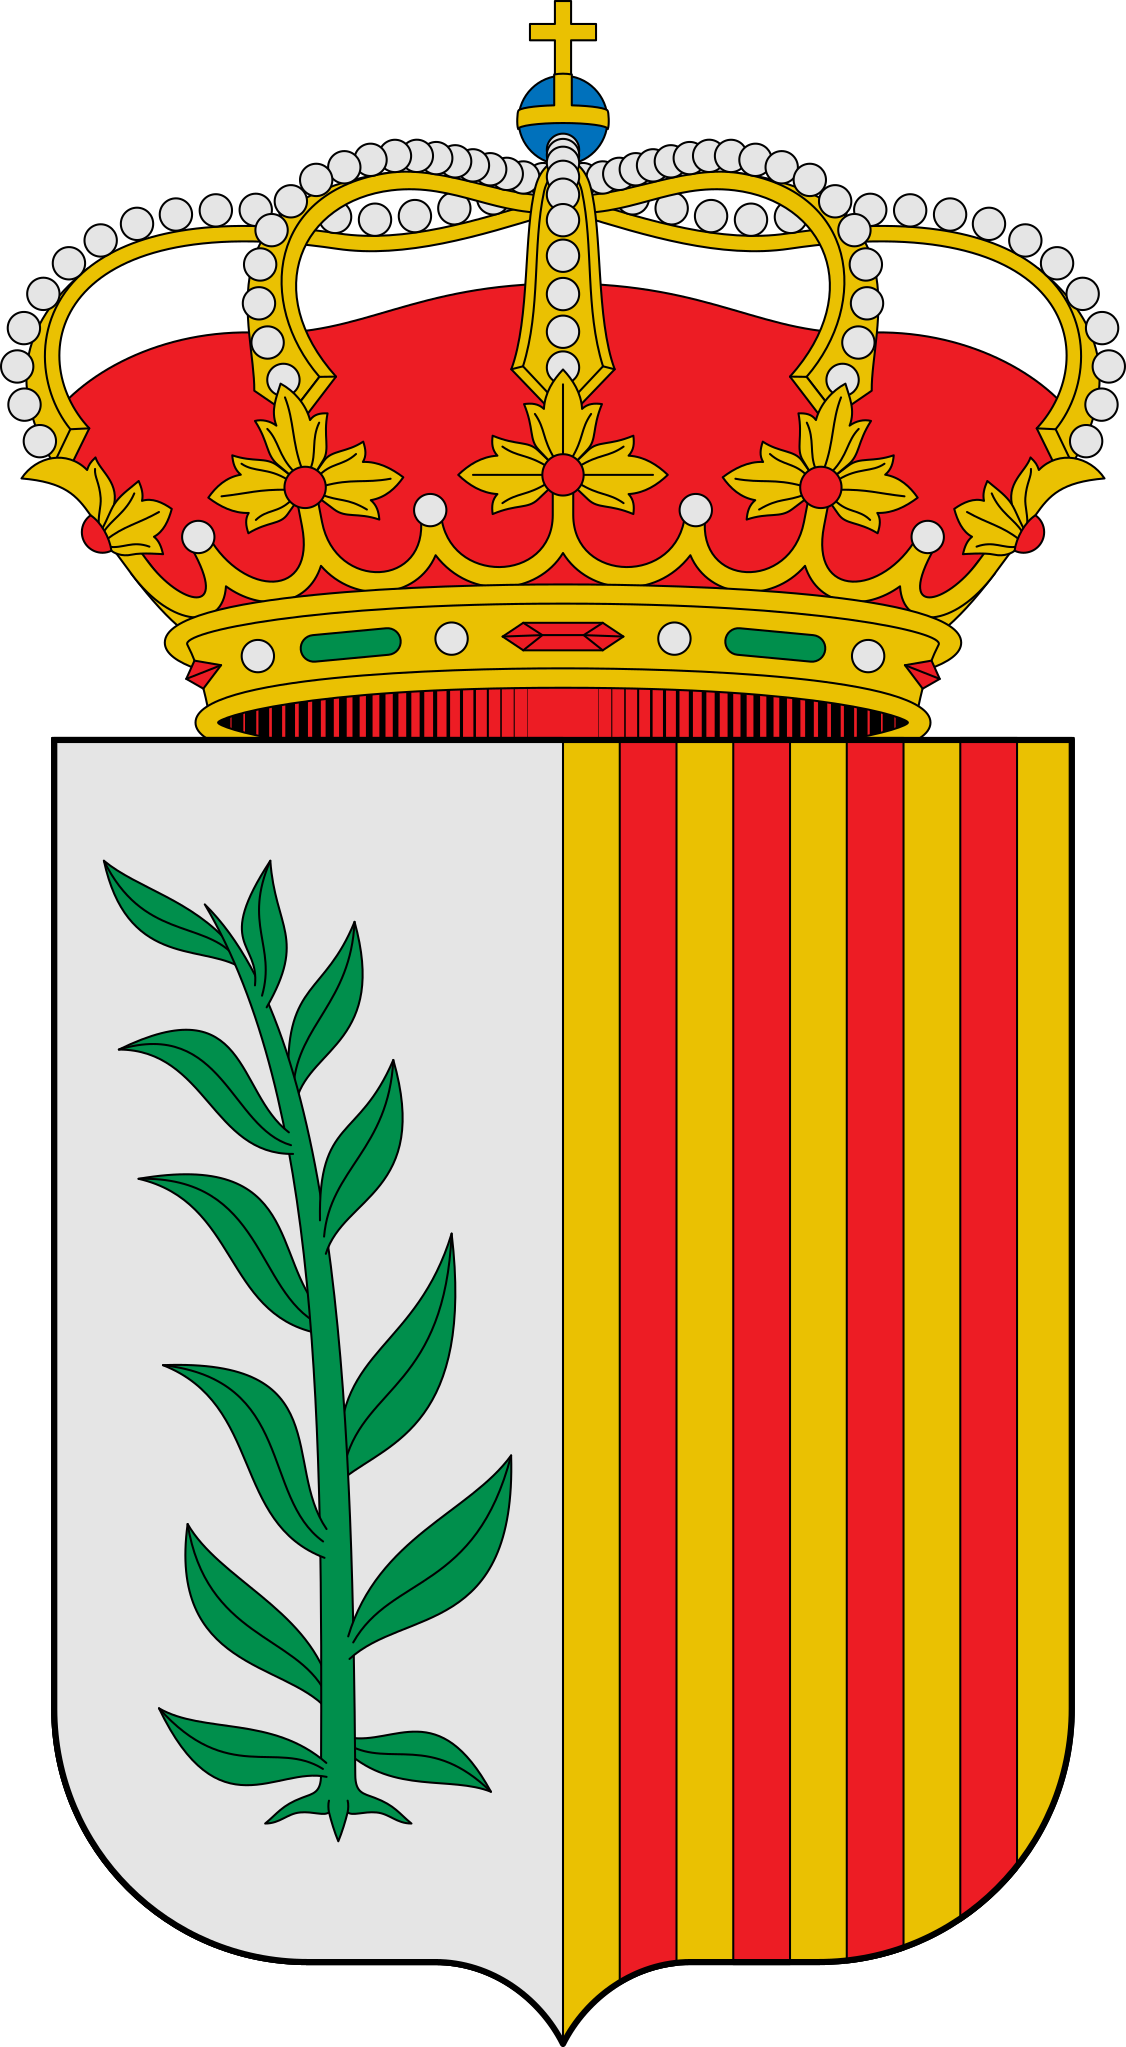 Escudo_de_Cañizar_del_Olivar_(Teruel).svg